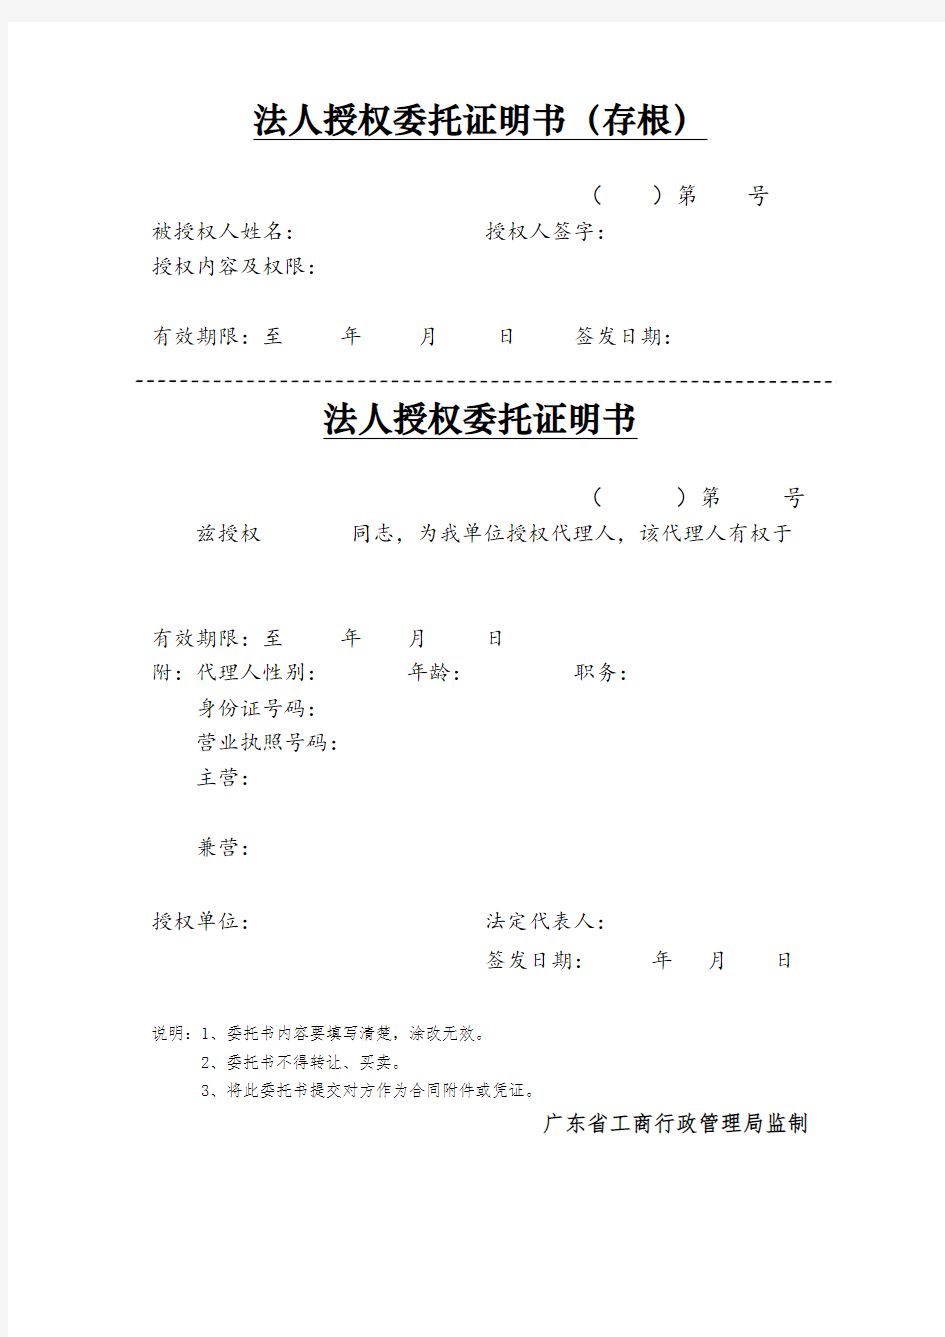 法人授权委托证明书--广东省工商行政管理局监制